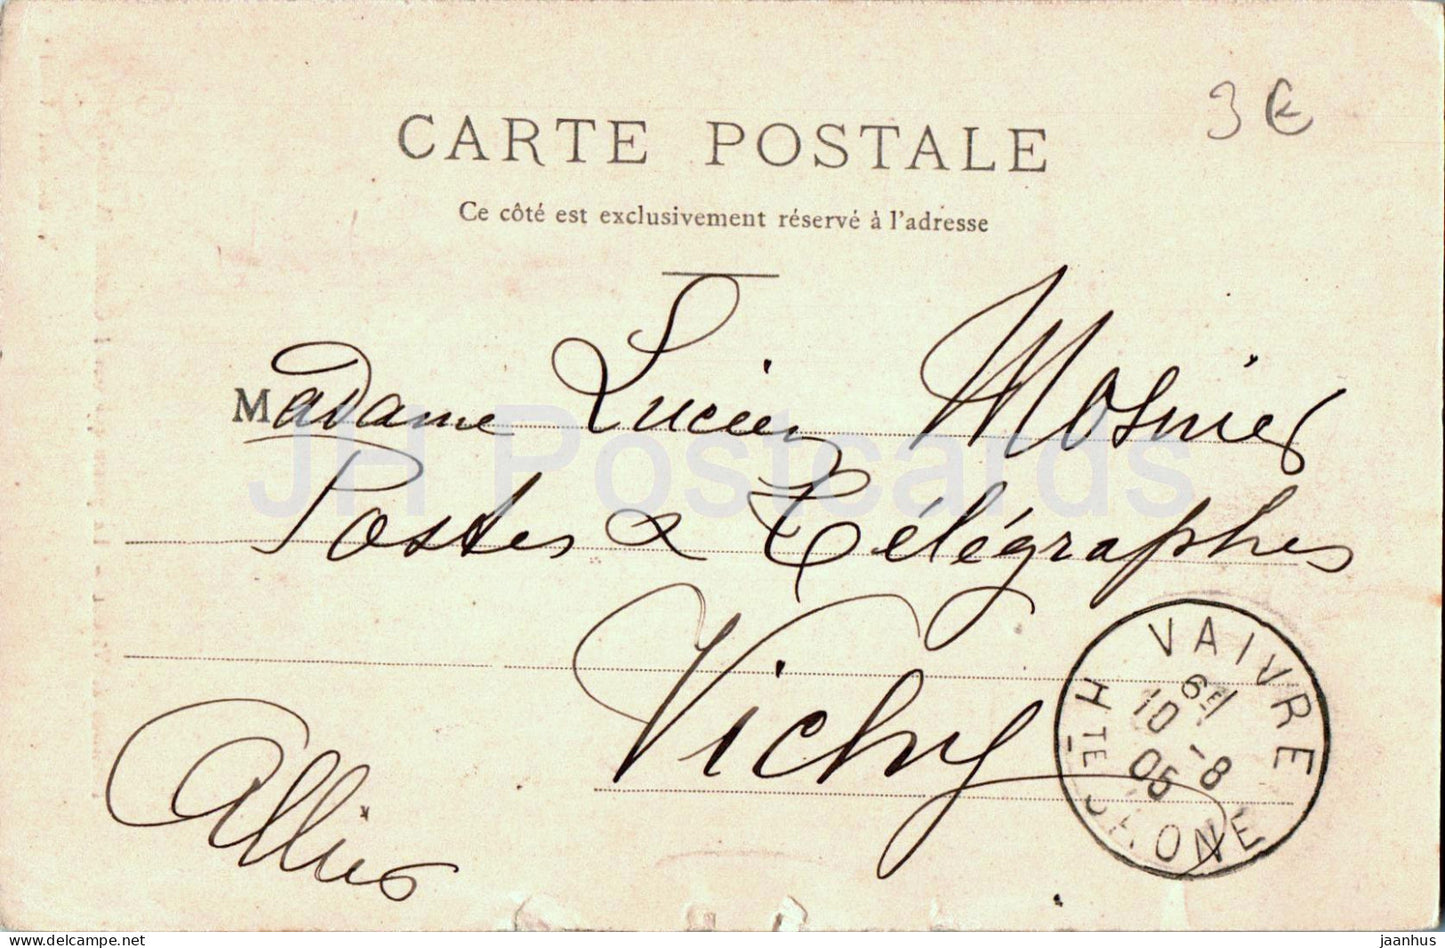 Envirous de Vesoul - La pierre qui vire a Chariez - alte Postkarte - 1905 - Frankreich - gebraucht 